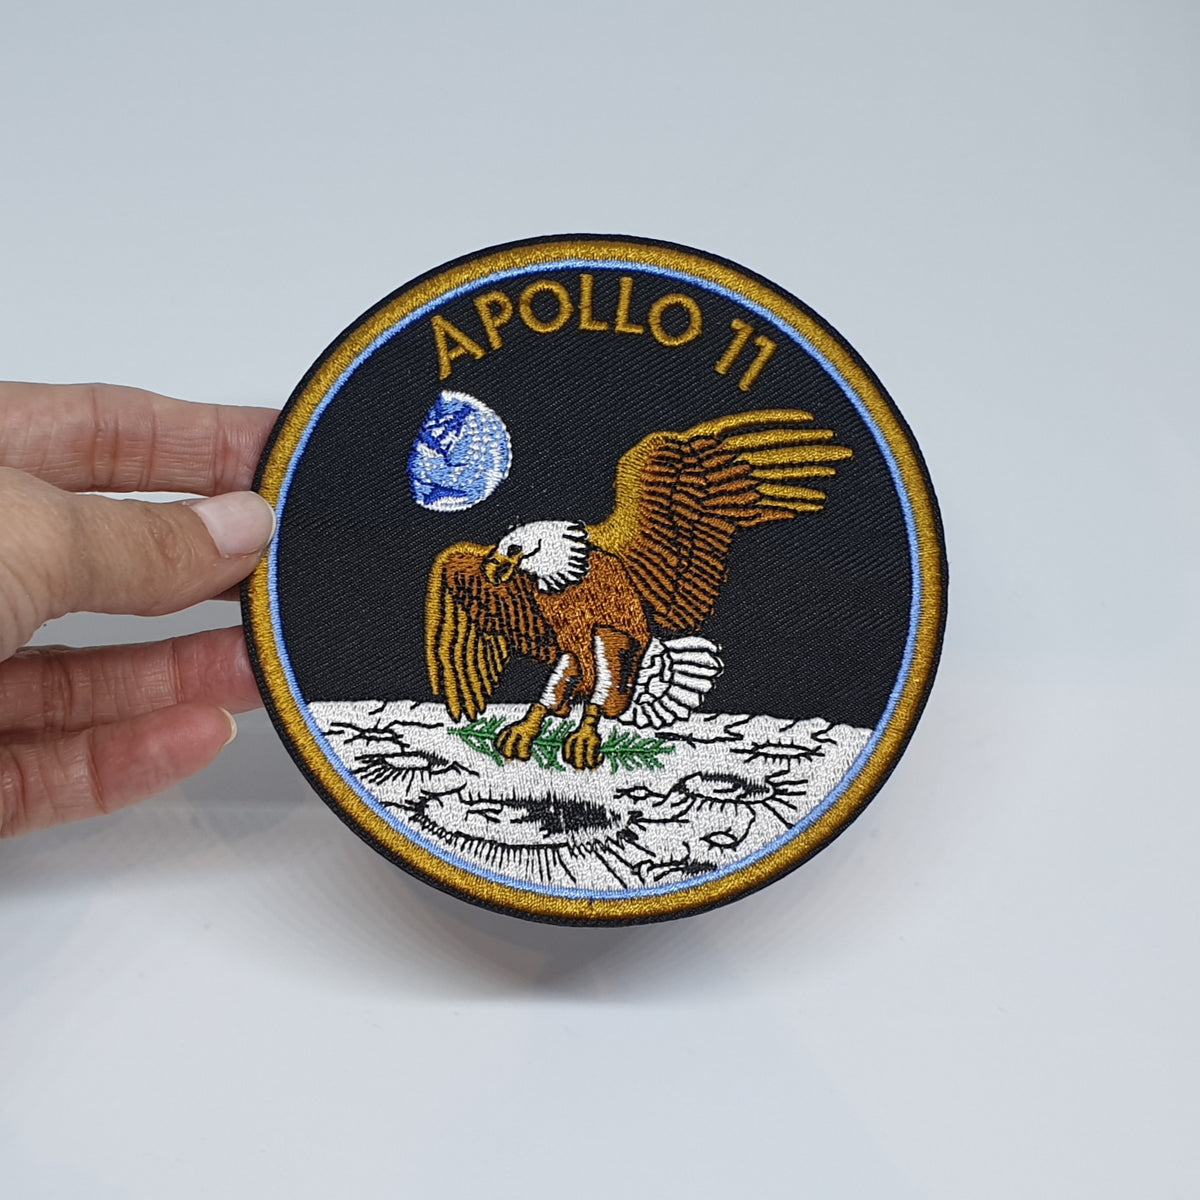 PARCHES BORDADOS NASA. APOLLO 11, APOLO 11, 100TH SPACE SHUTTLE